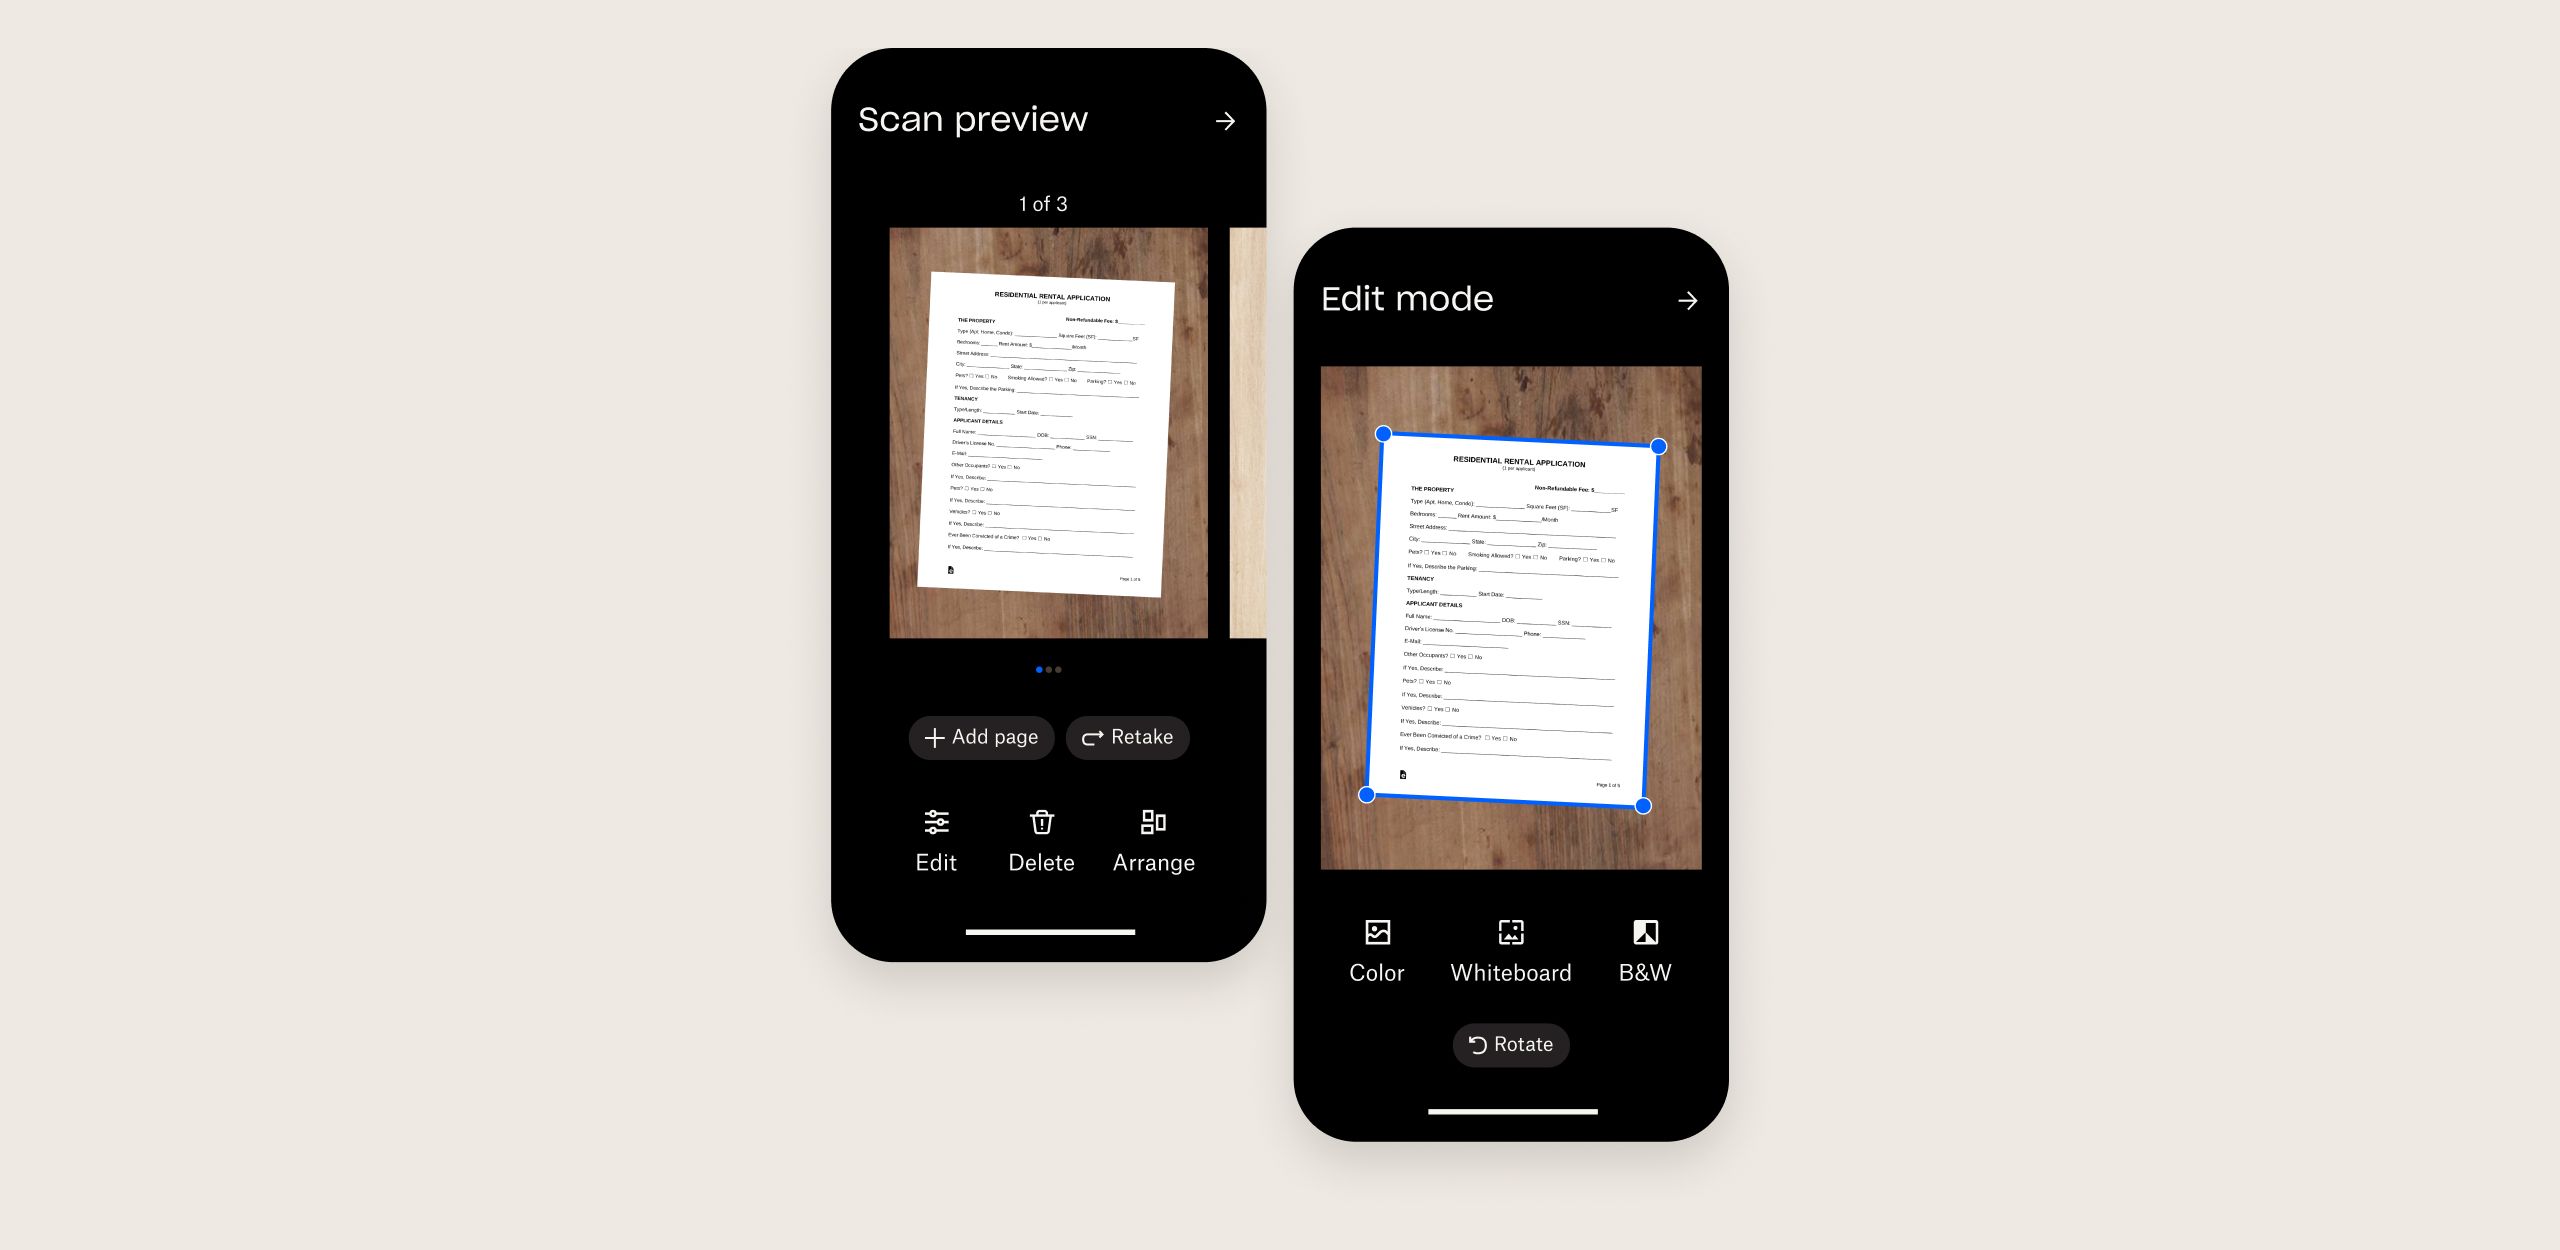 Två mobila skärmar visar skanning av flera dokument